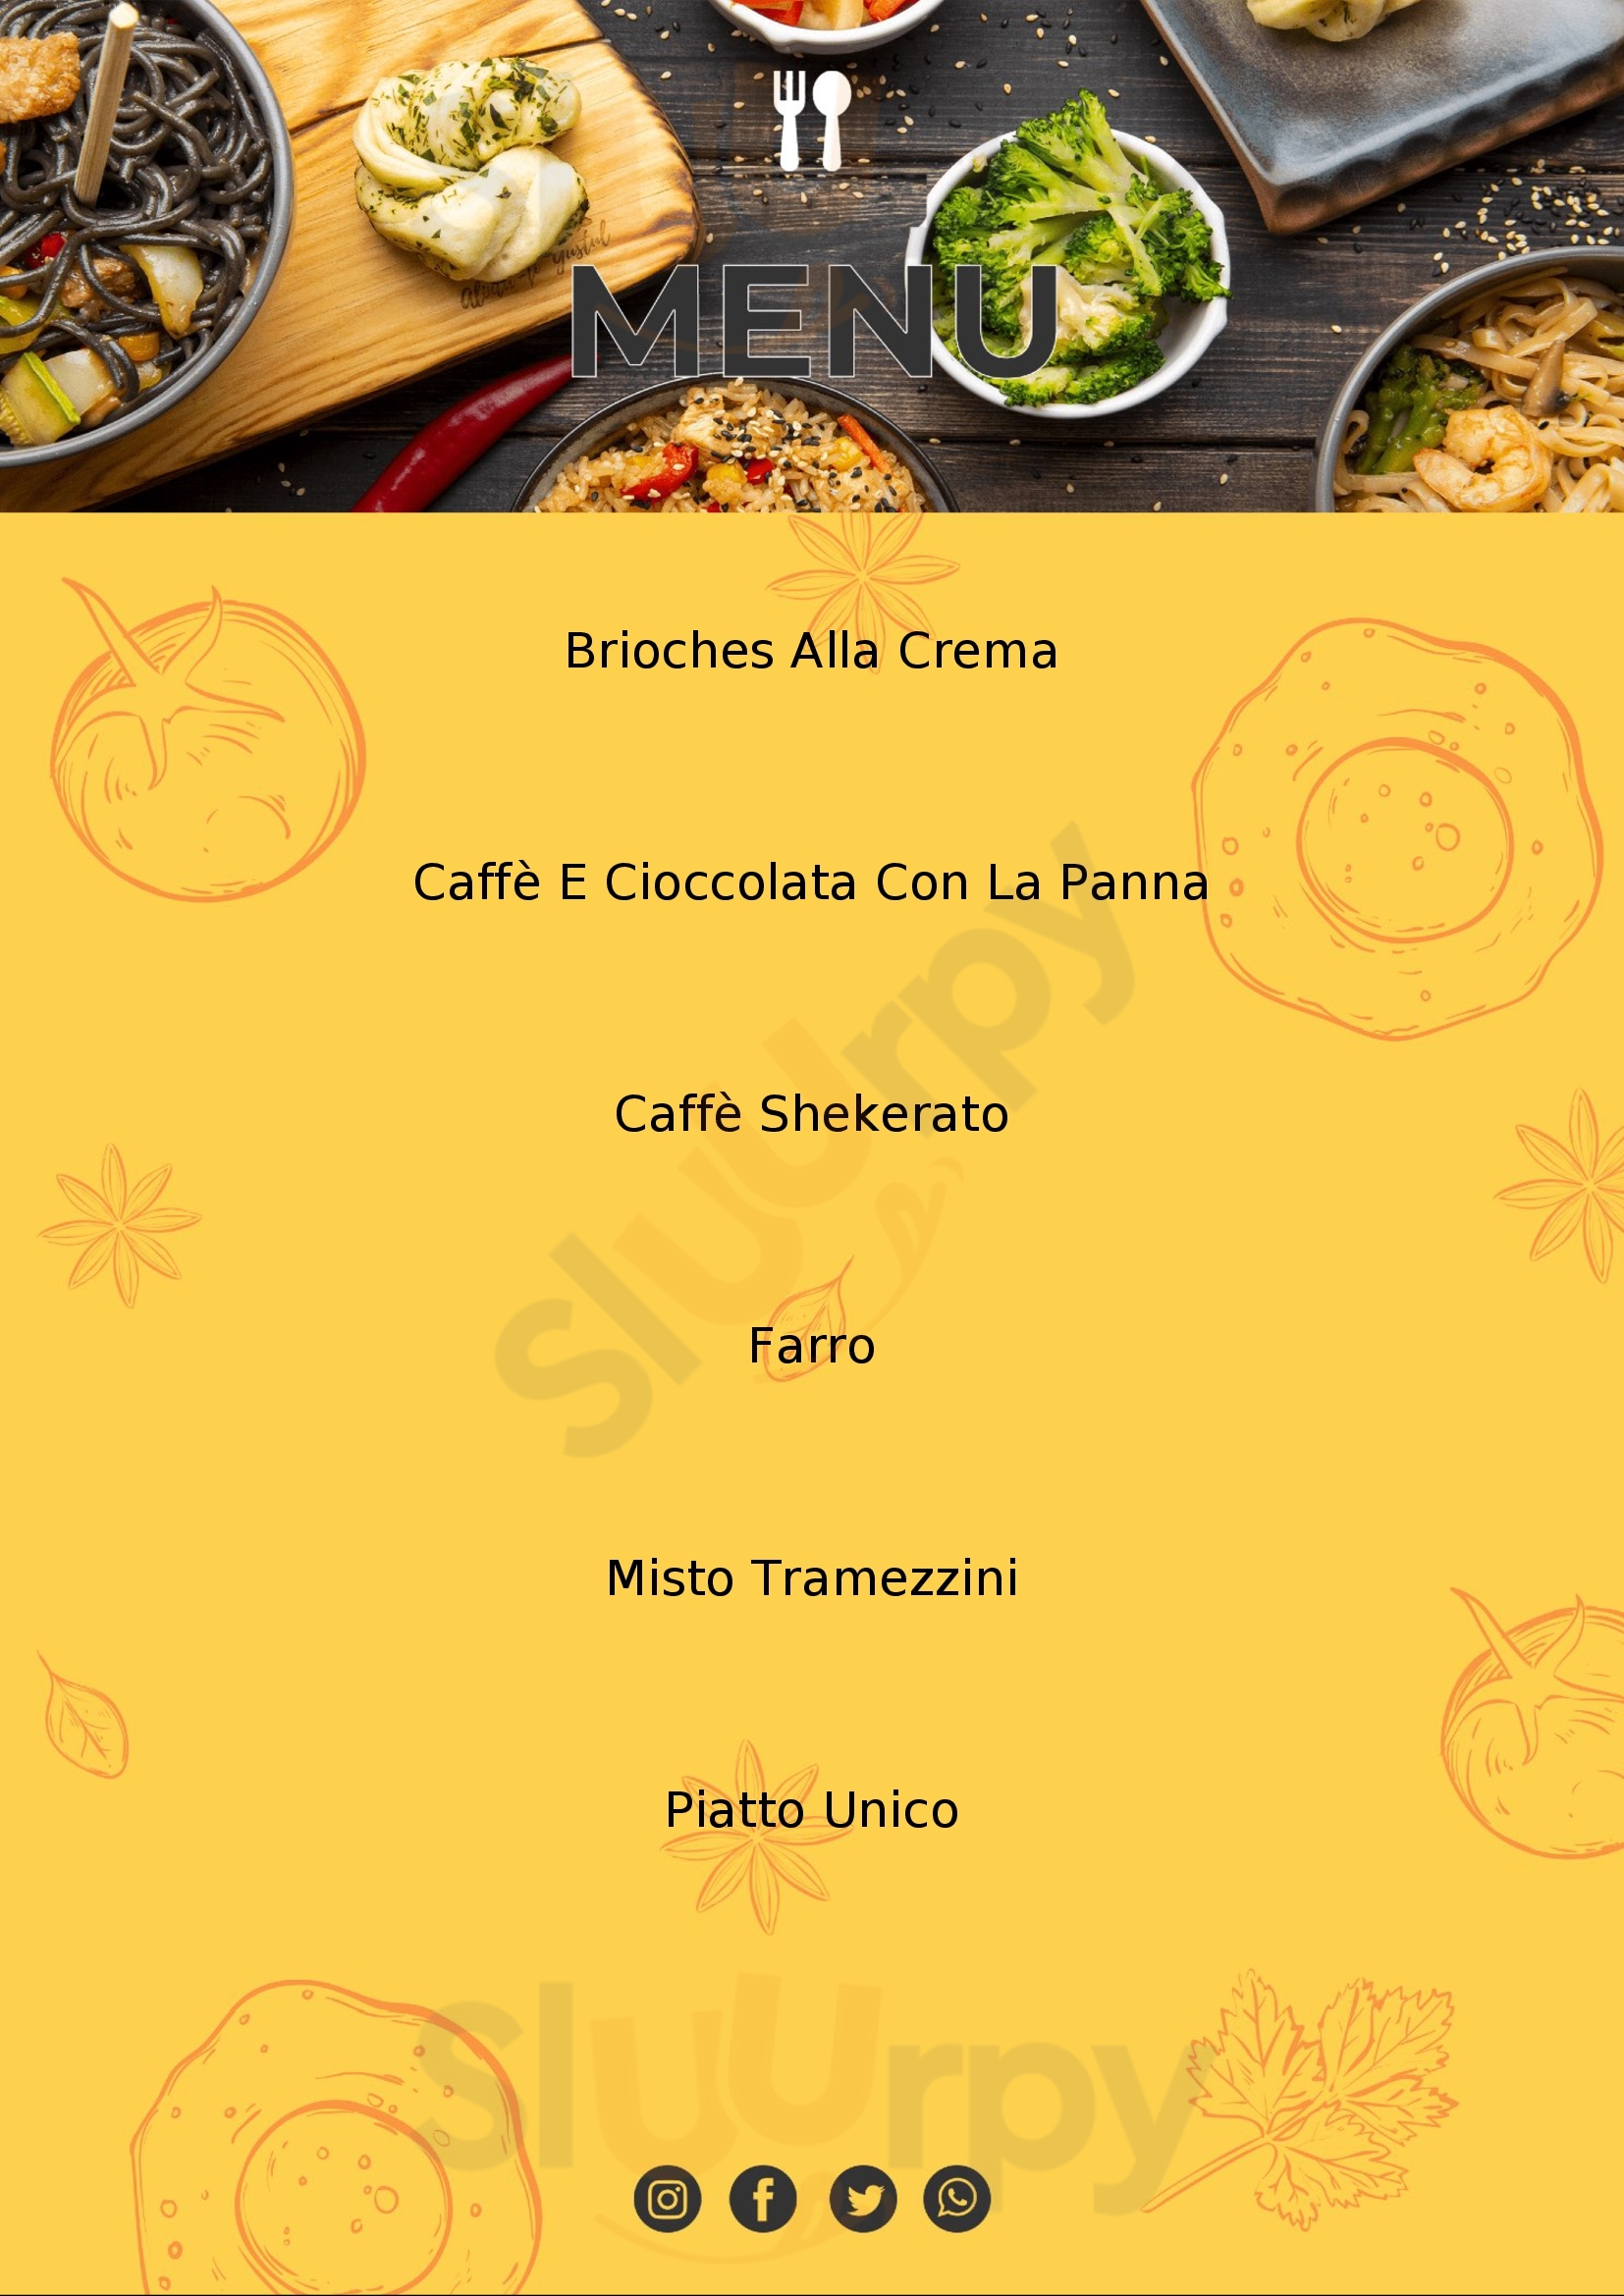 Caffè Mirabilia Piacenza menù 1 pagina